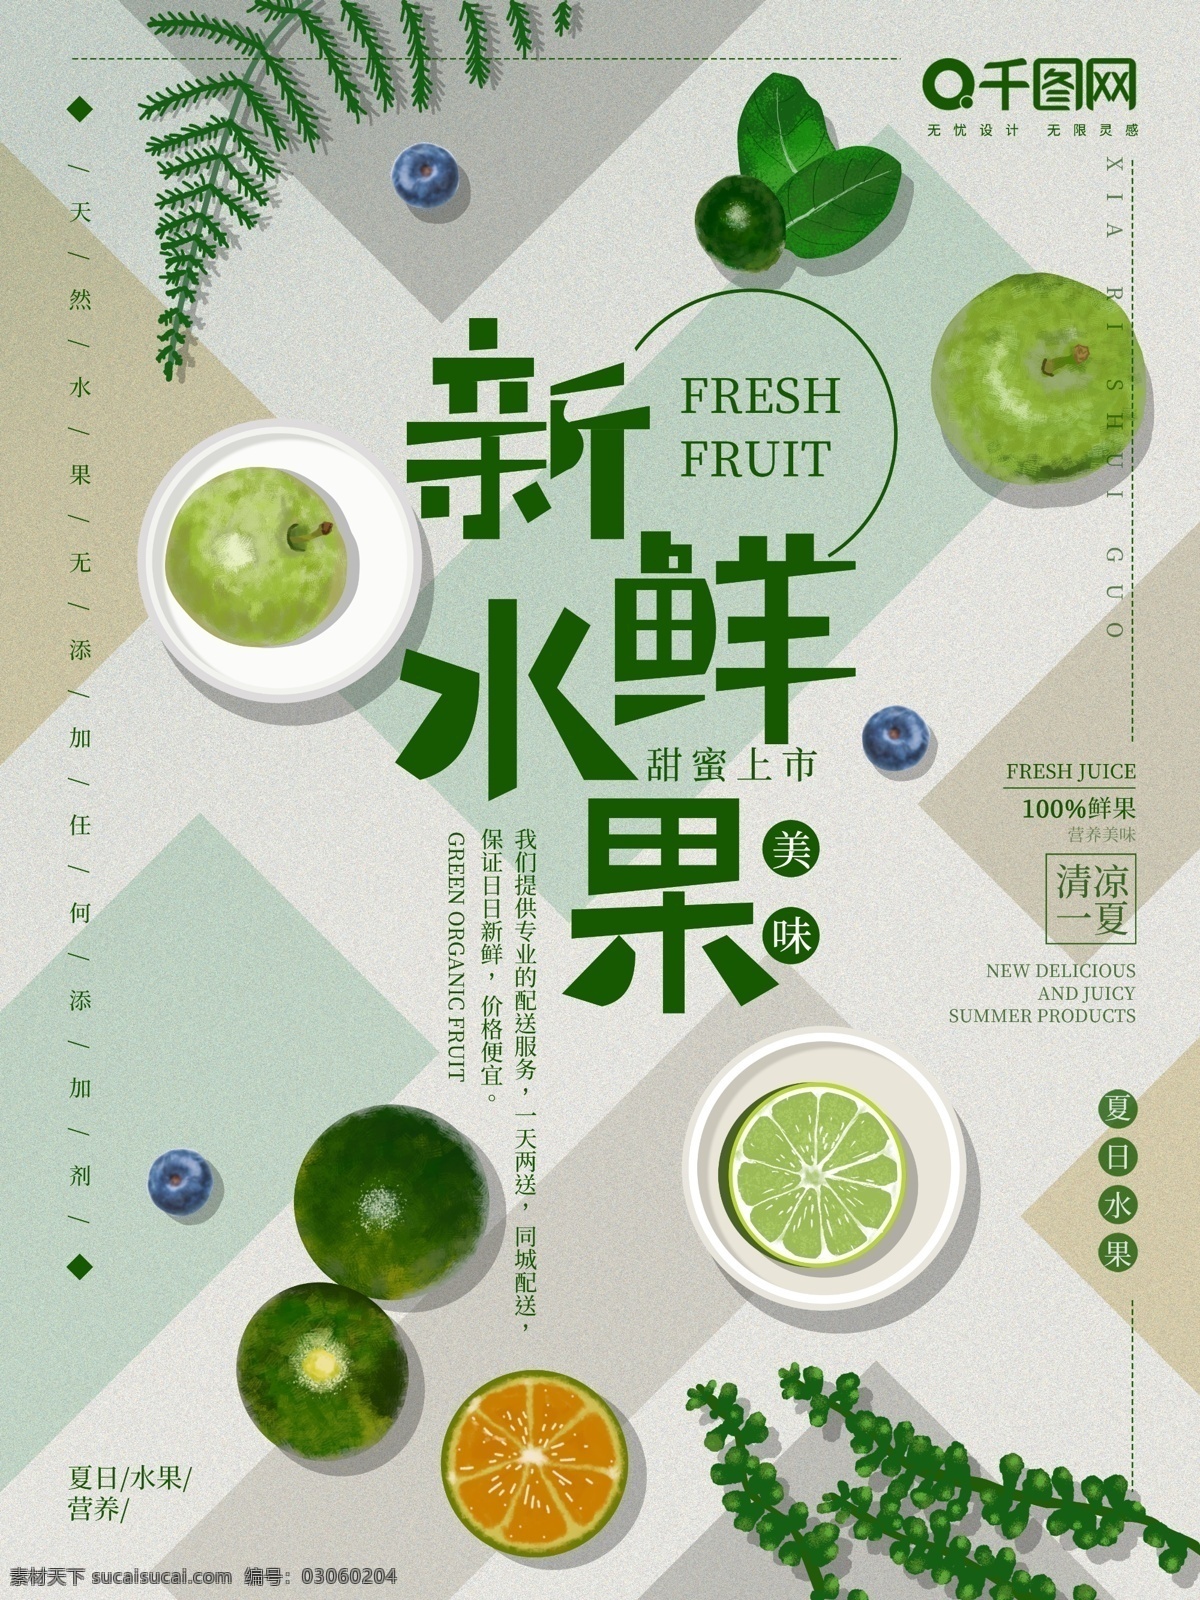 原创 手绘 小 清新 新鲜 水果 海报 小清新 苹果 橘子 青柠 新鲜水果 插画 绿色